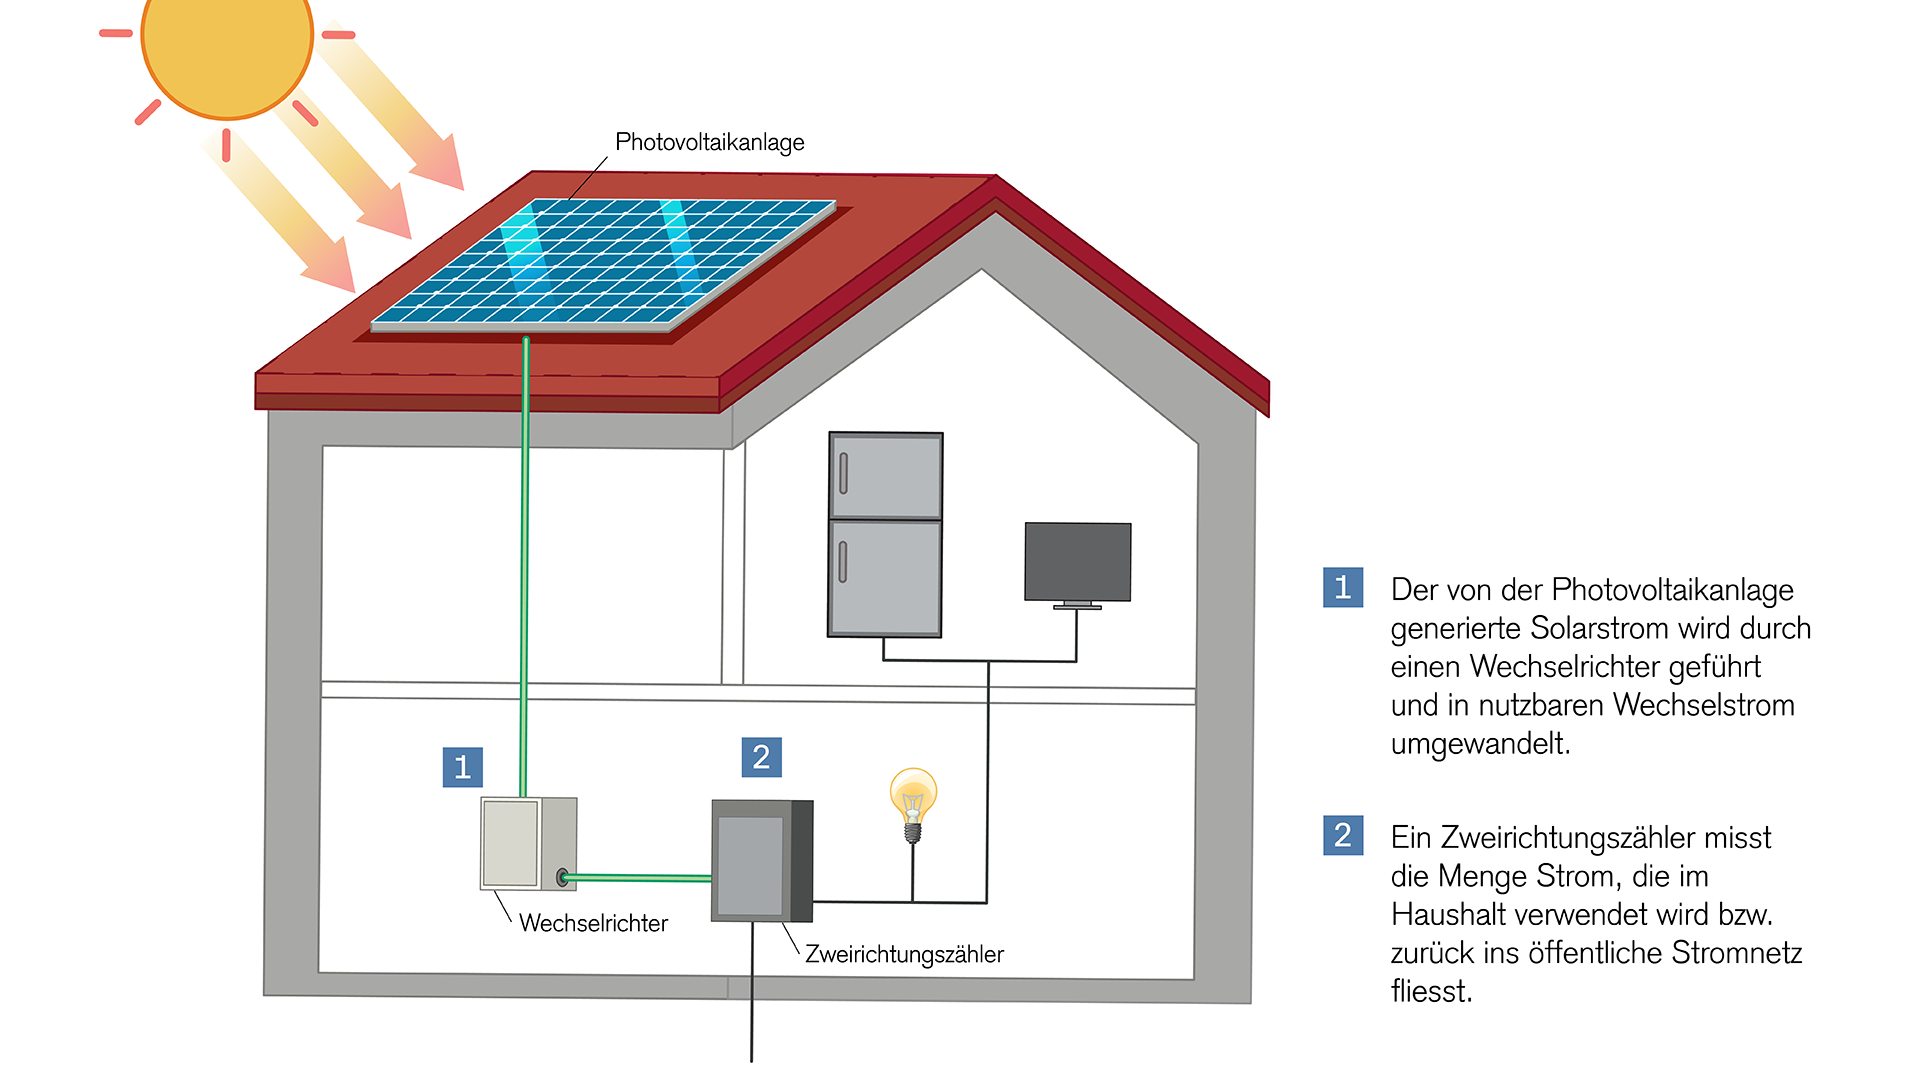 Photovoltaikanlage: Umwandlung von Sonnenlicht in Strom